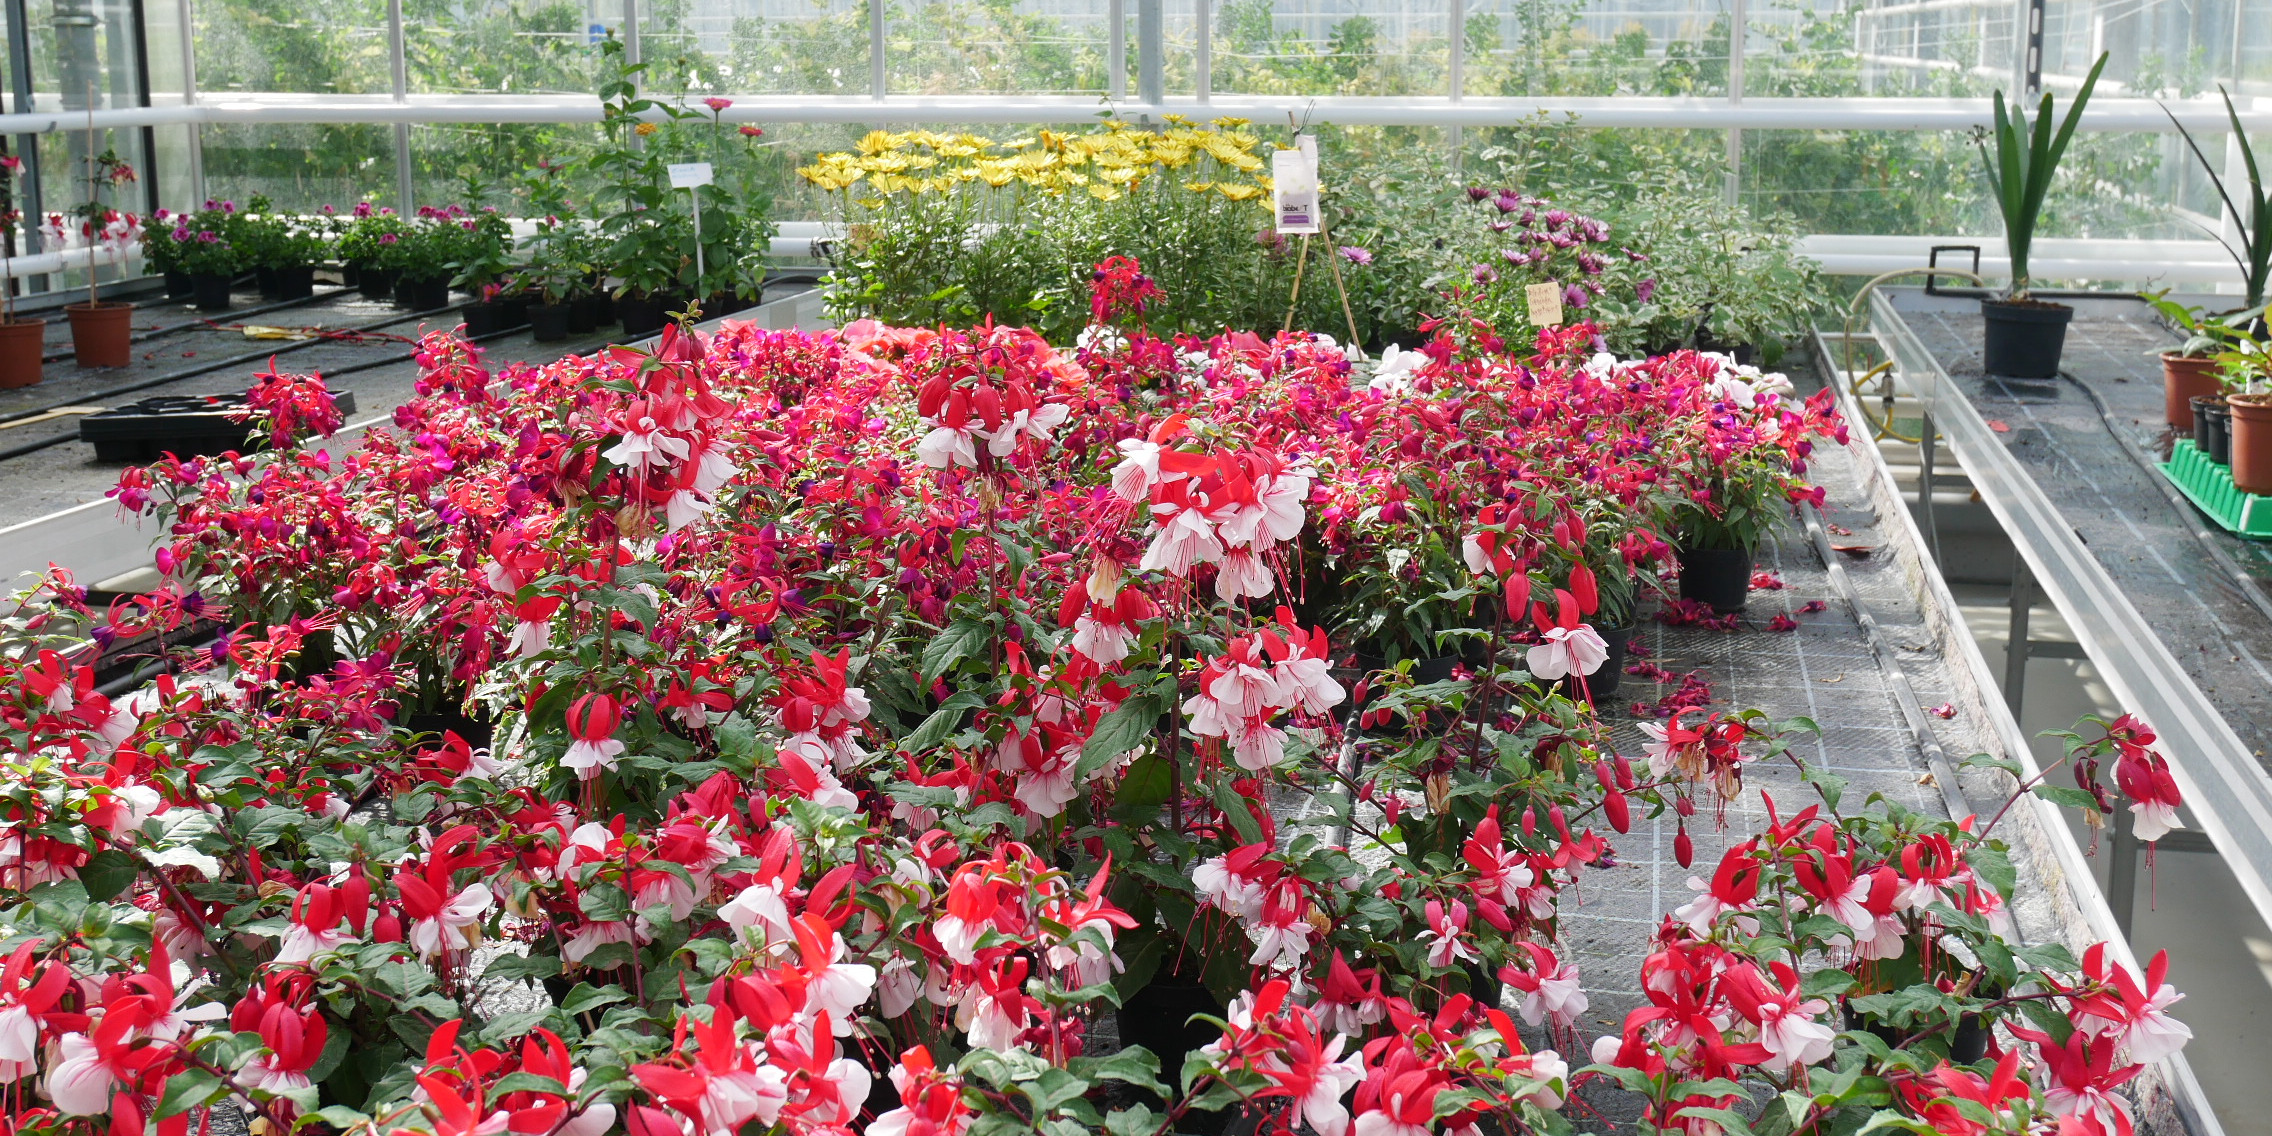 Blumen und Pflanzen - Produkte der Gärtnerei der JVA Brandenburg an der Havel